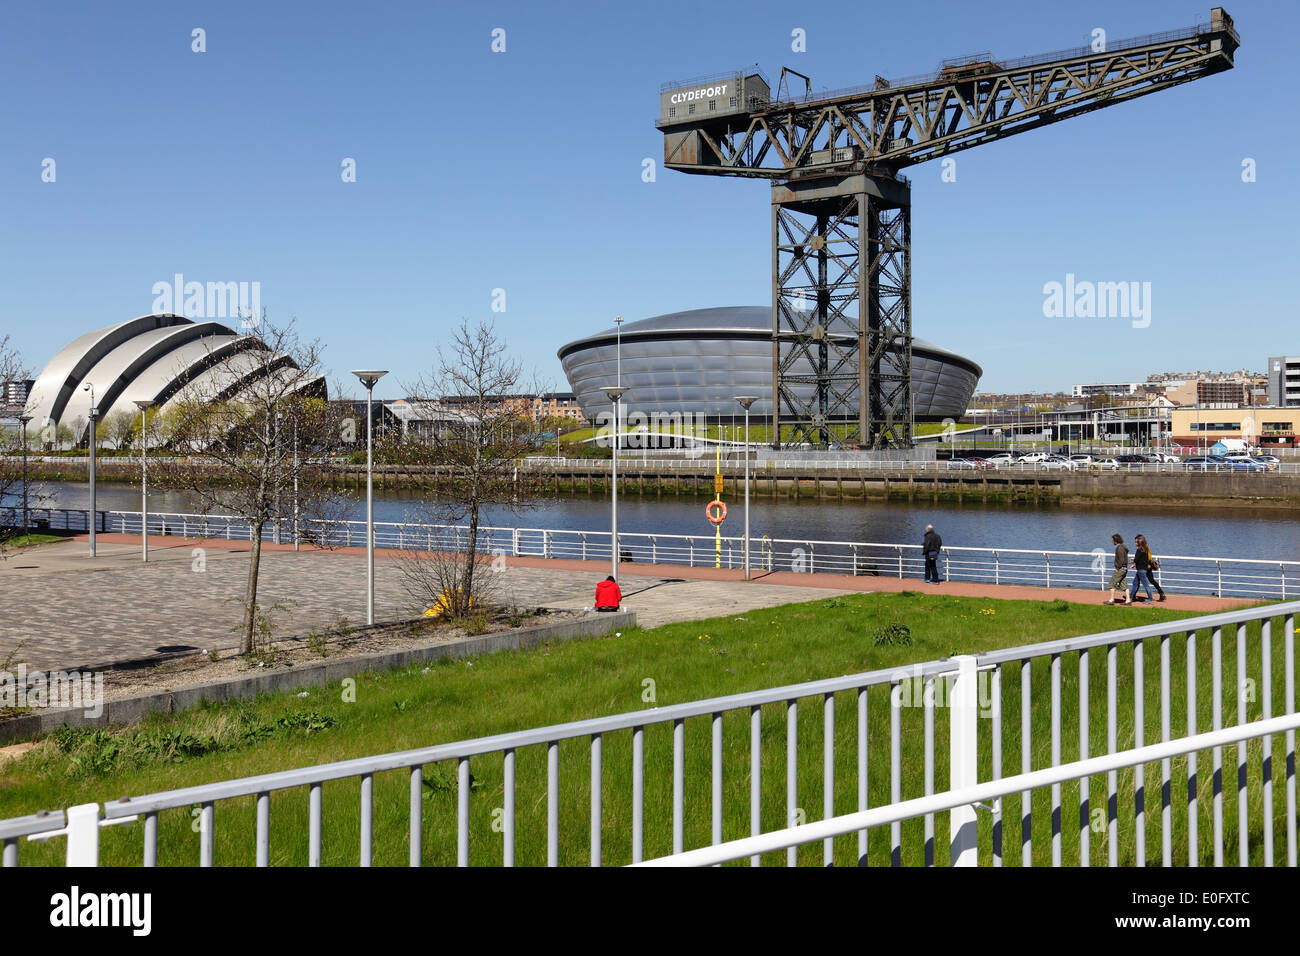 Le Clyde Auditorium / Armadillo, Écossais SSE Hydro et Finnieston Crane à côté de la rivière Clyde à Glasgow, Écosse, Royaume-Uni Banque D'Images